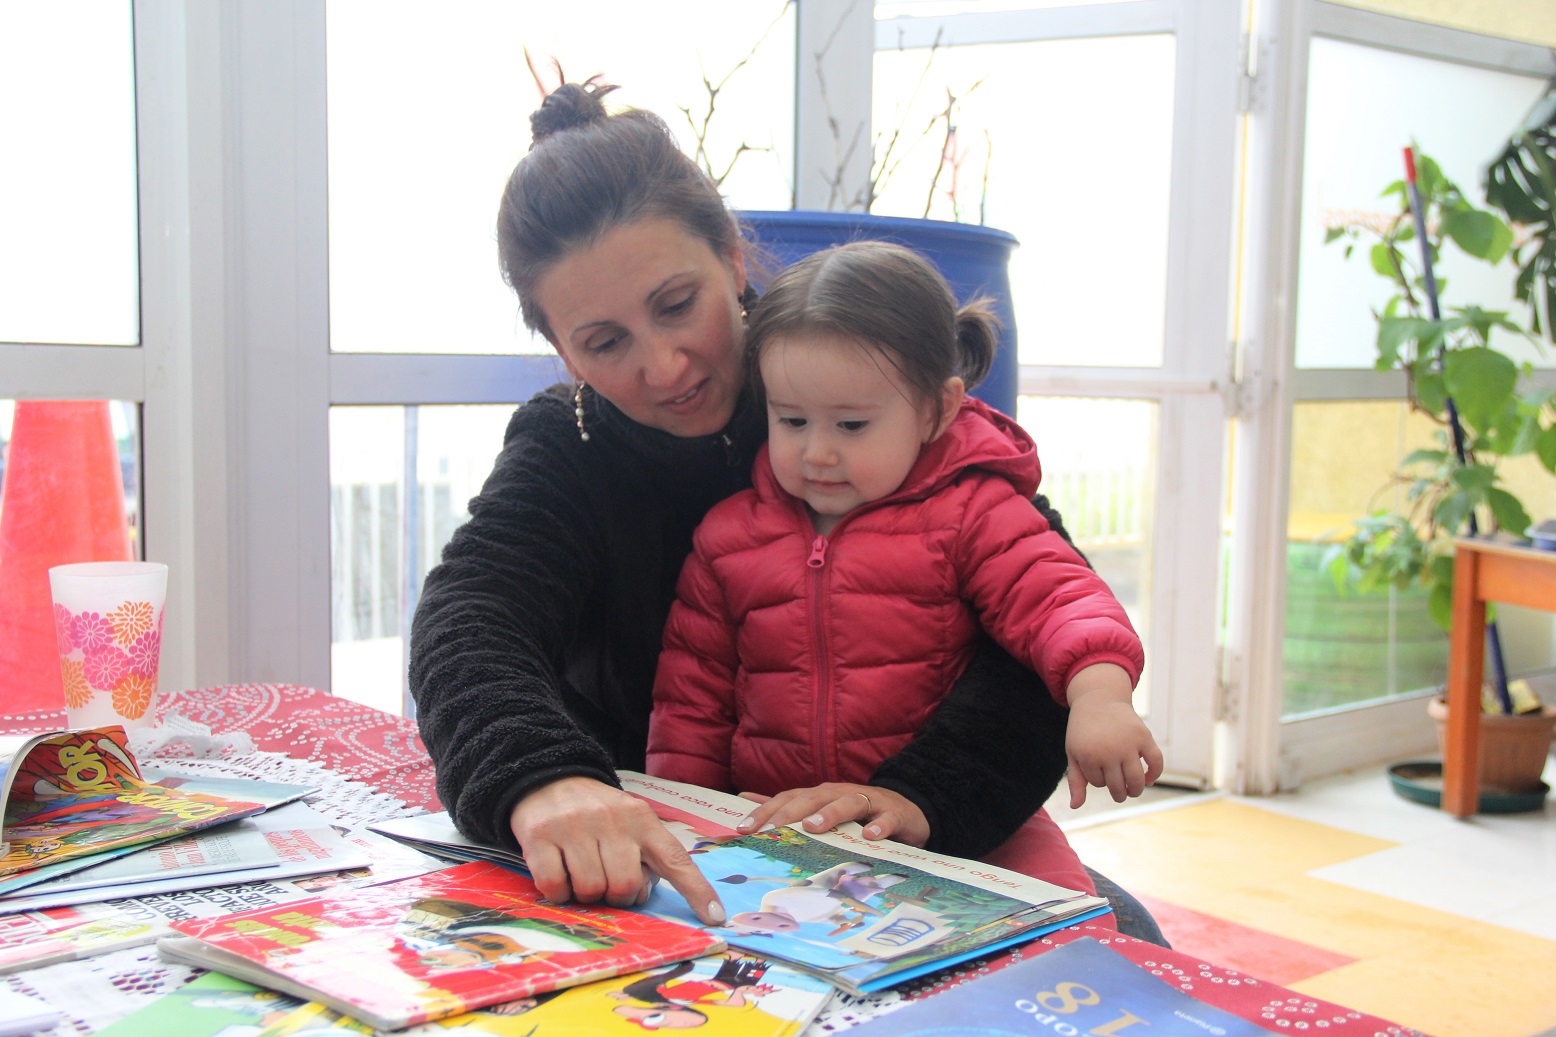 Educadoras del Jardín Infantil “Caperucita Roja” organizaron “chocolatada” para fomentar la lectura